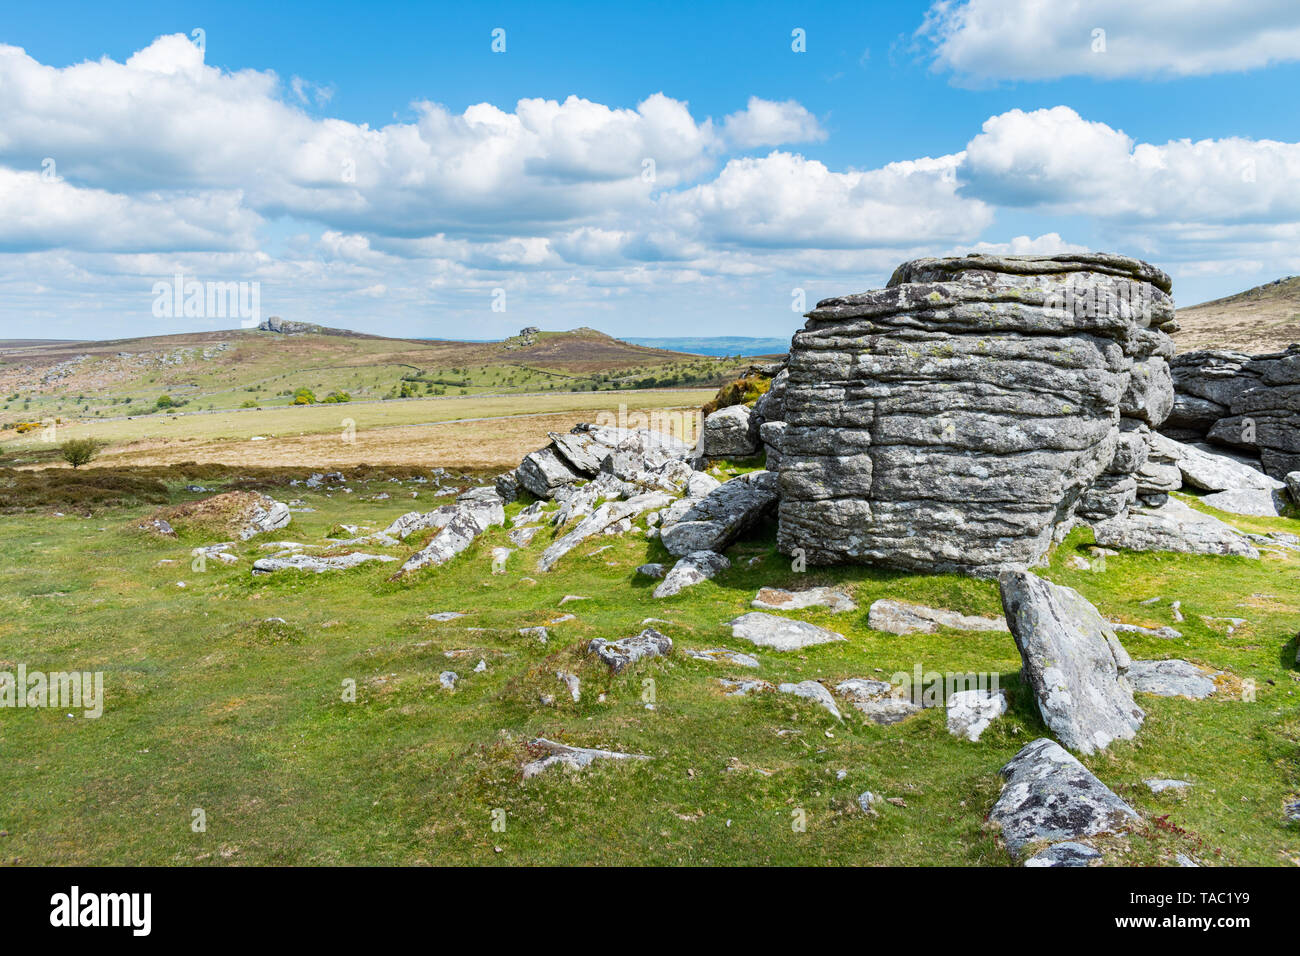 Vista ingrandita del granito affioramenti di roccia in alto a Tor, Parco Nazionale di Dartmoor, Devon, Regno Unito. Emsworthy rocce e sella sono Tor in background. Foto Stock